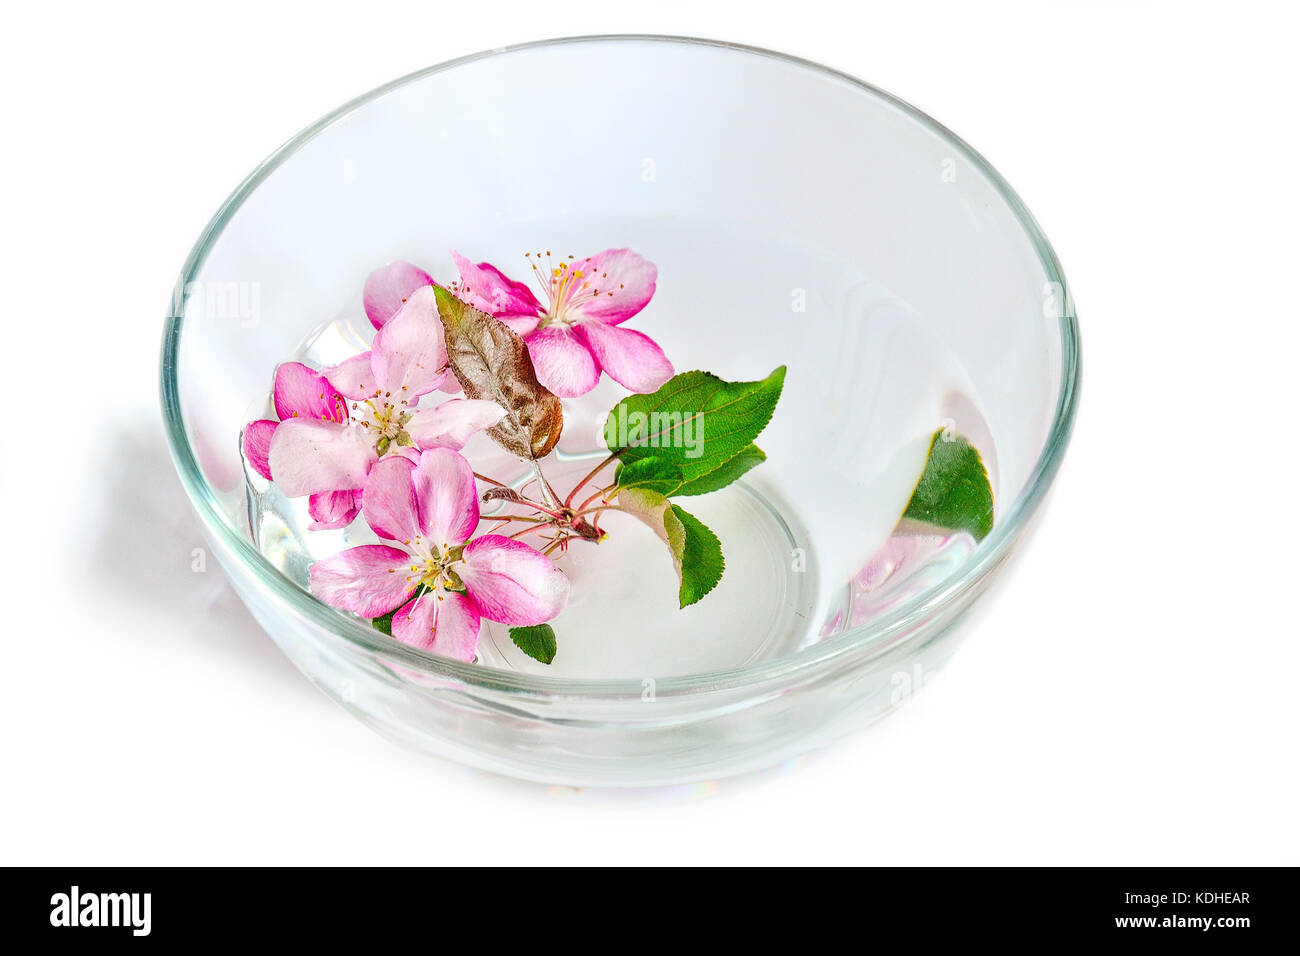 Rosa fresca di ciliegia oppure di melo fiori galleggianti in recipiente di vetro con acqua. Trattamento termale, aromaterapia e trattamenti viso concept Foto Stock